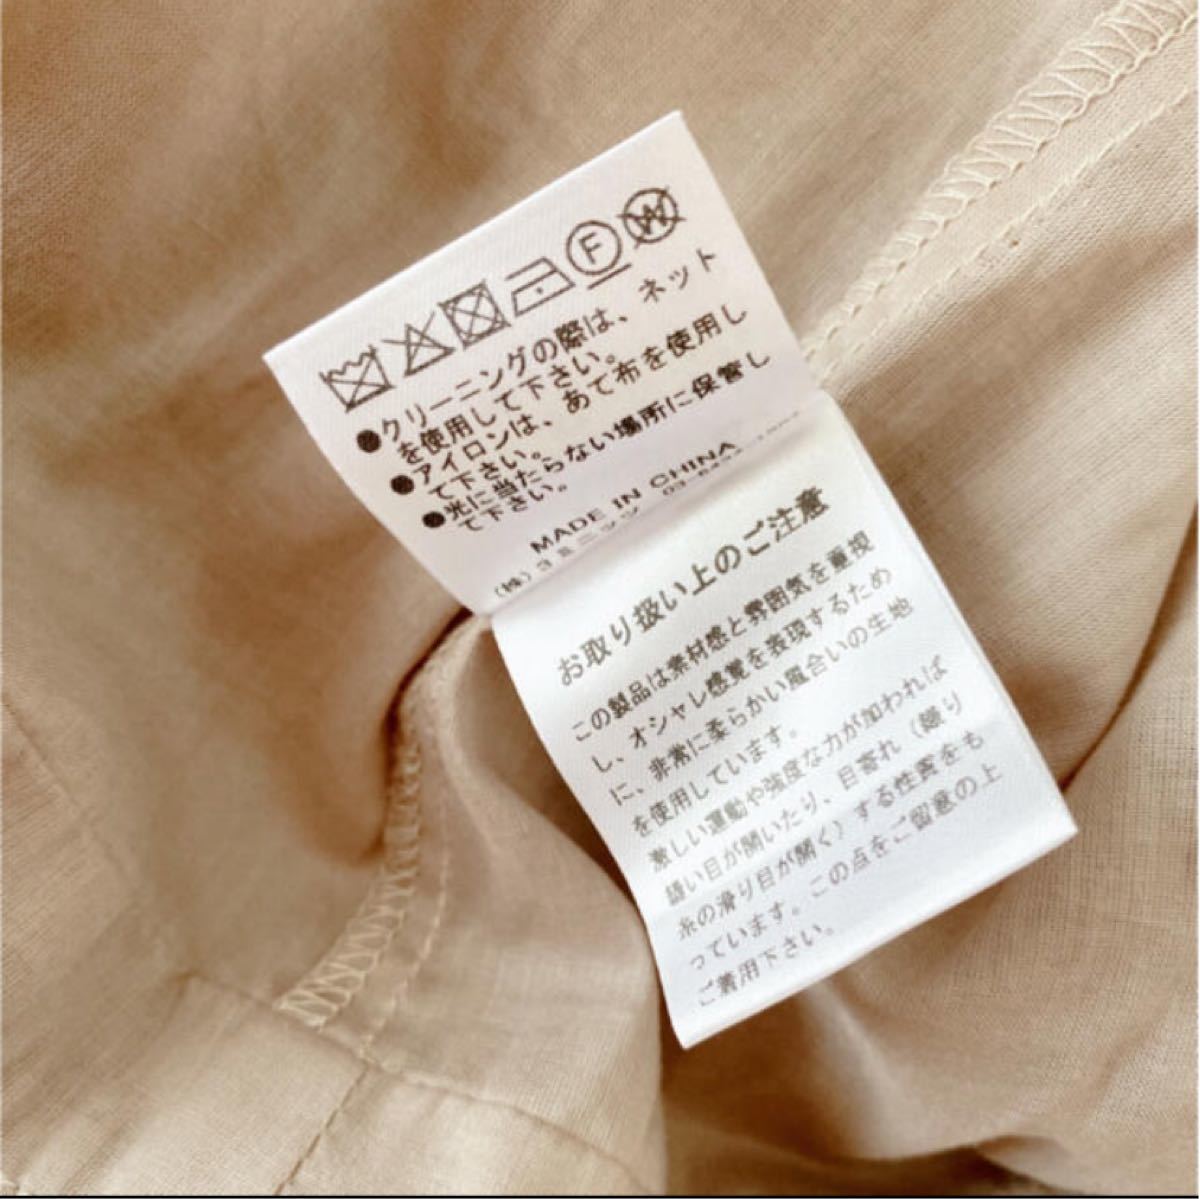 ☆新品未使用☆ETRE TOKYO☆KISS MY DAY DRESS☆ワンピース☆ ccorca.org